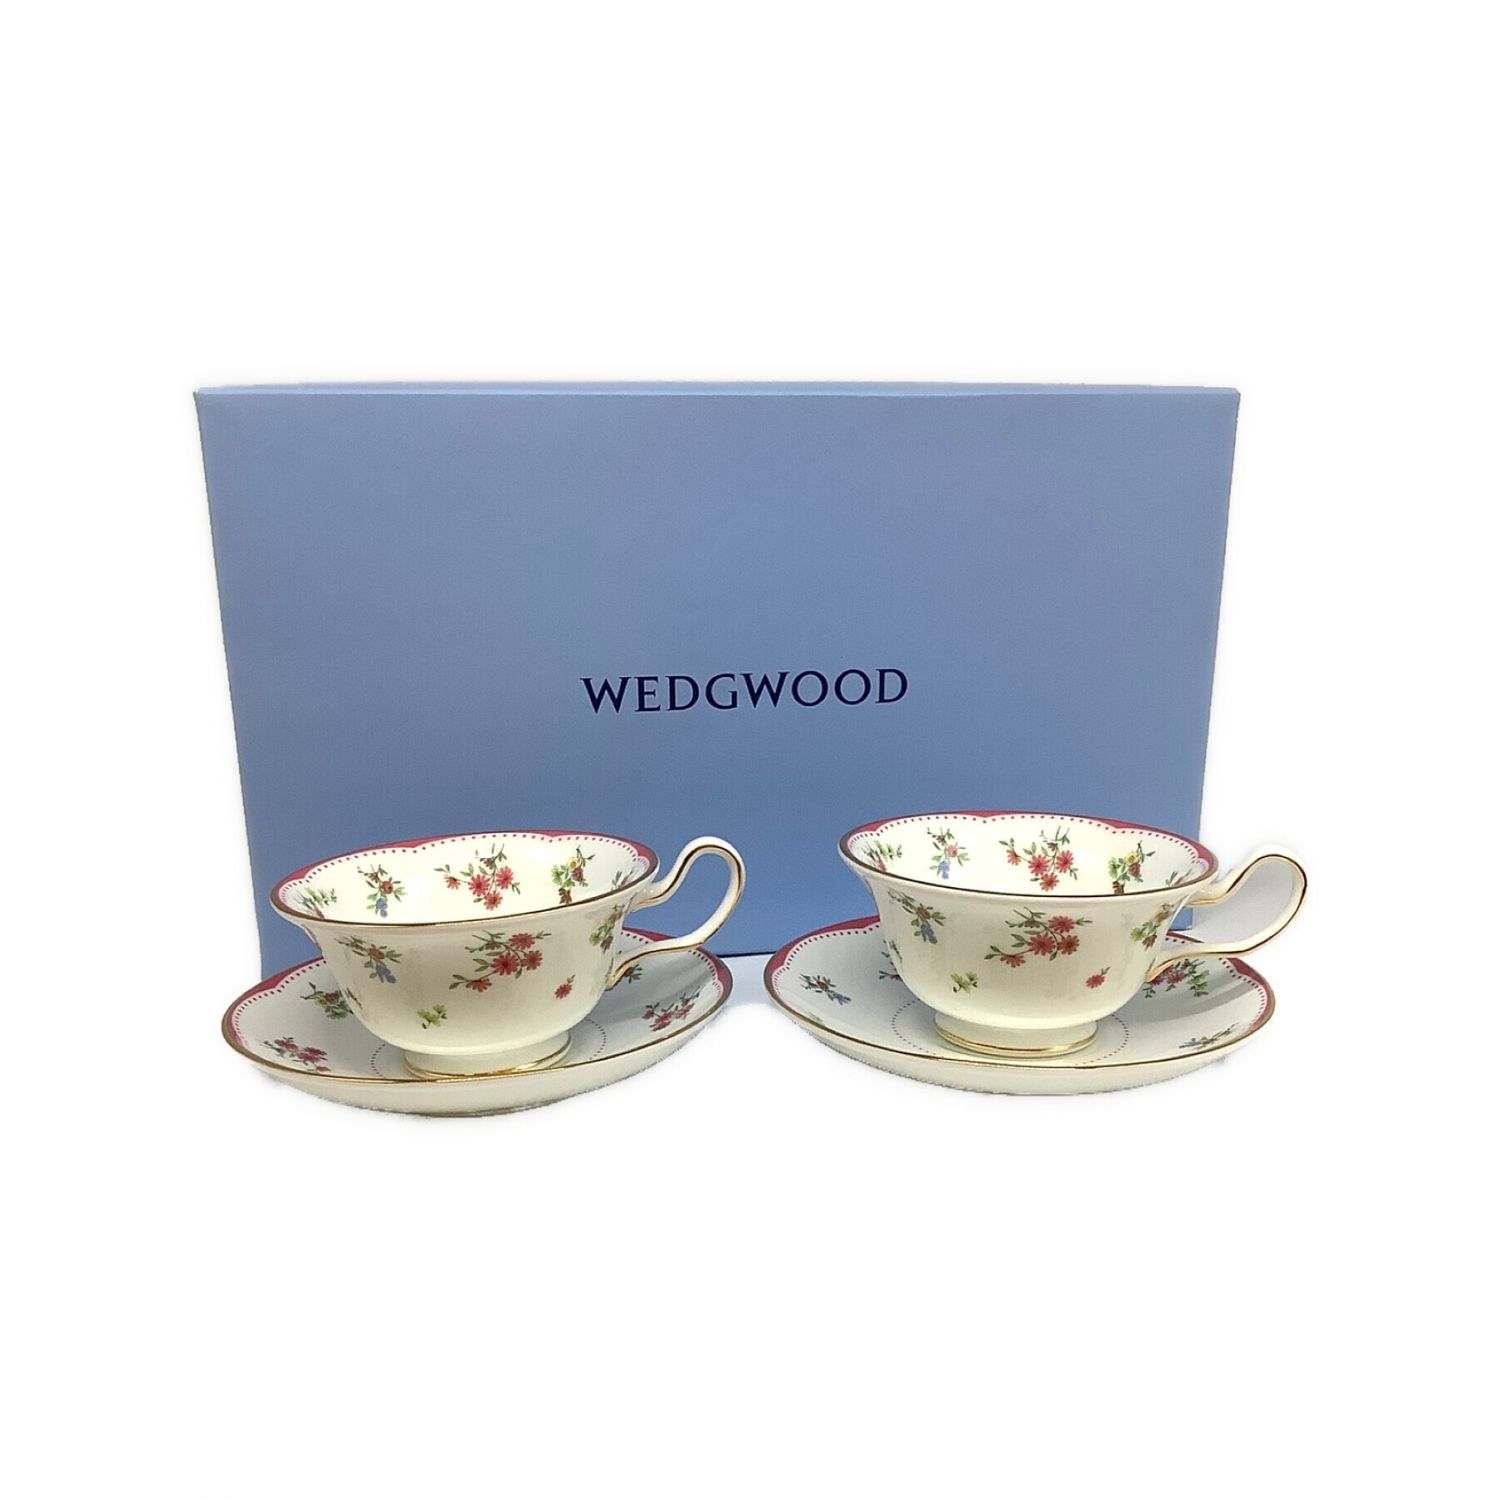 Wedgwood (ウェッジウッド) ティーカップ&ソーサー ピオニー フロー ...